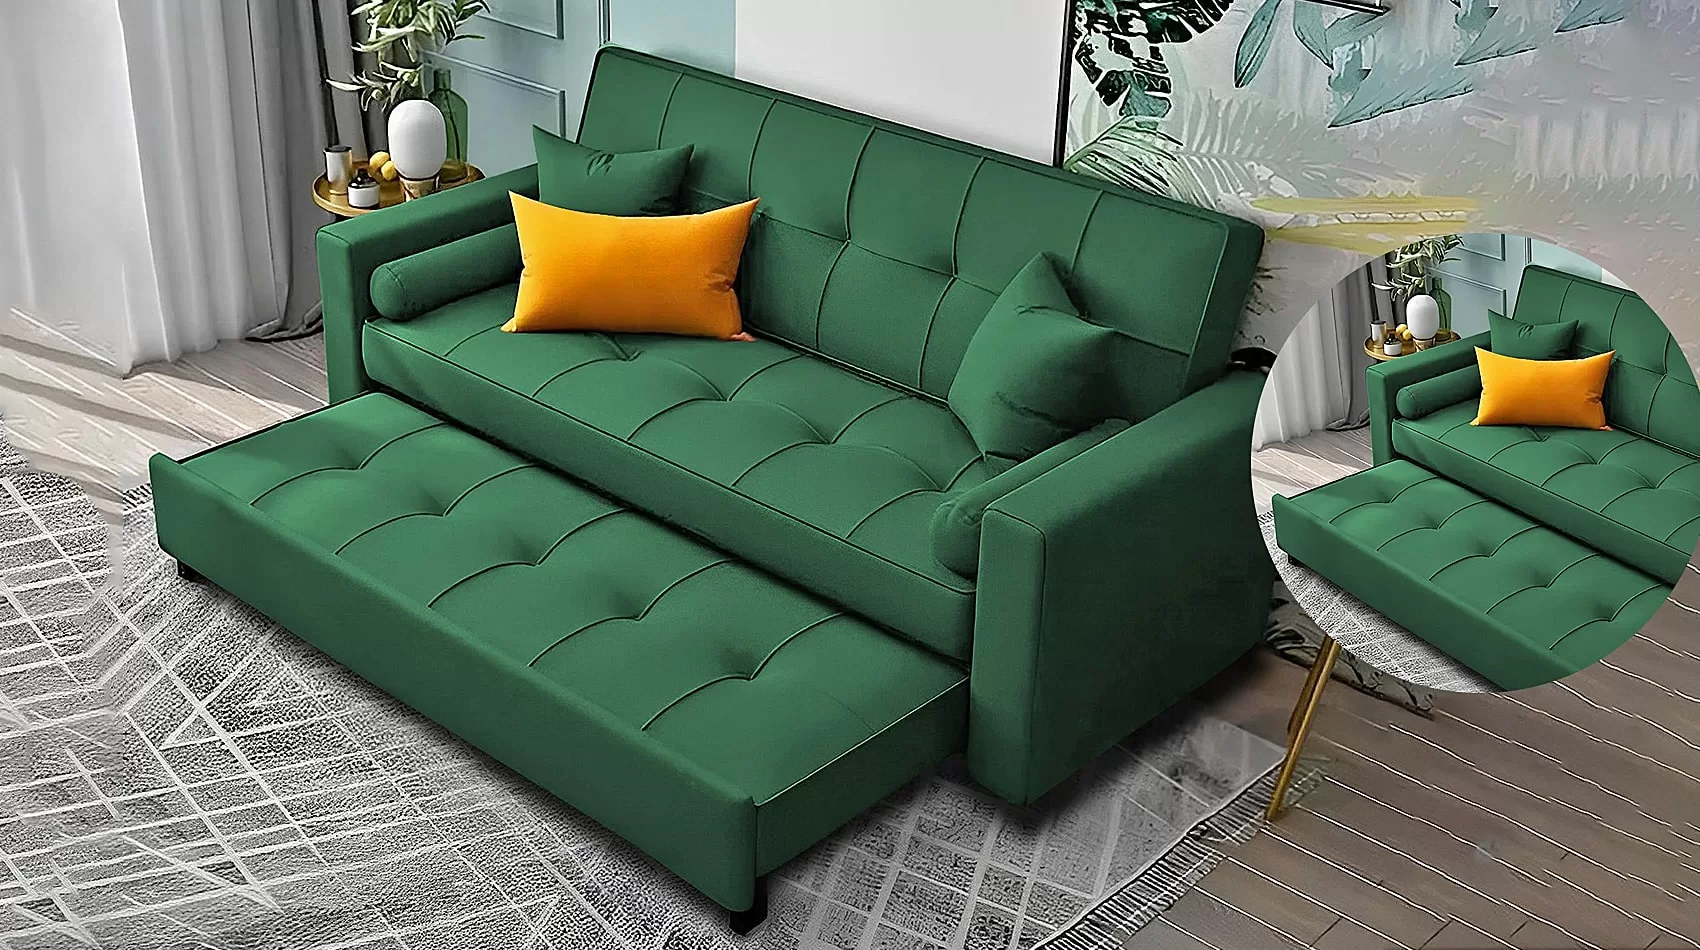 Green Sofa Sleeper | Green Sofa Bed | Green Couch Sleeper - Comfort Meets Function